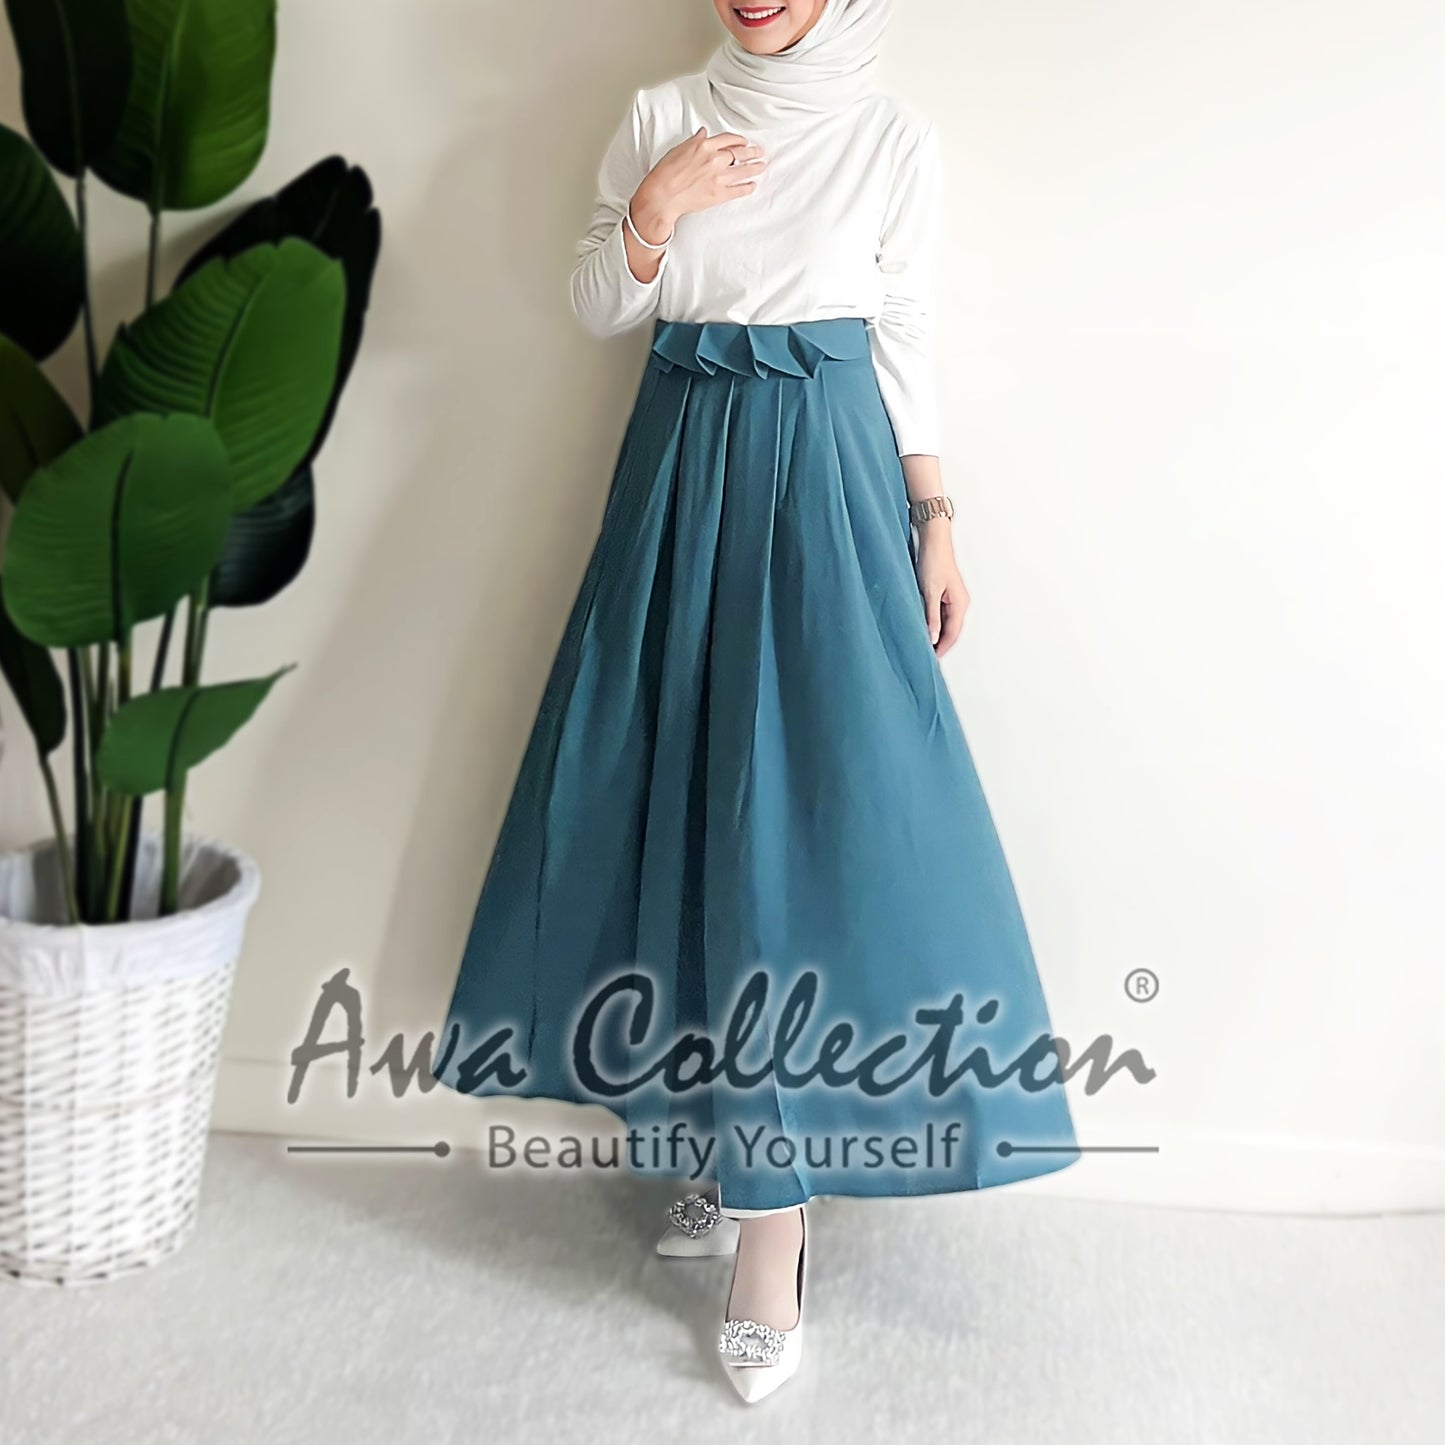 LALEESA Awa Collection BA510510 SKIRT WAFIYA Pleated A-Line Skirt Muslimah Skirt Labuh Skirt Pencil Skirt Kembang